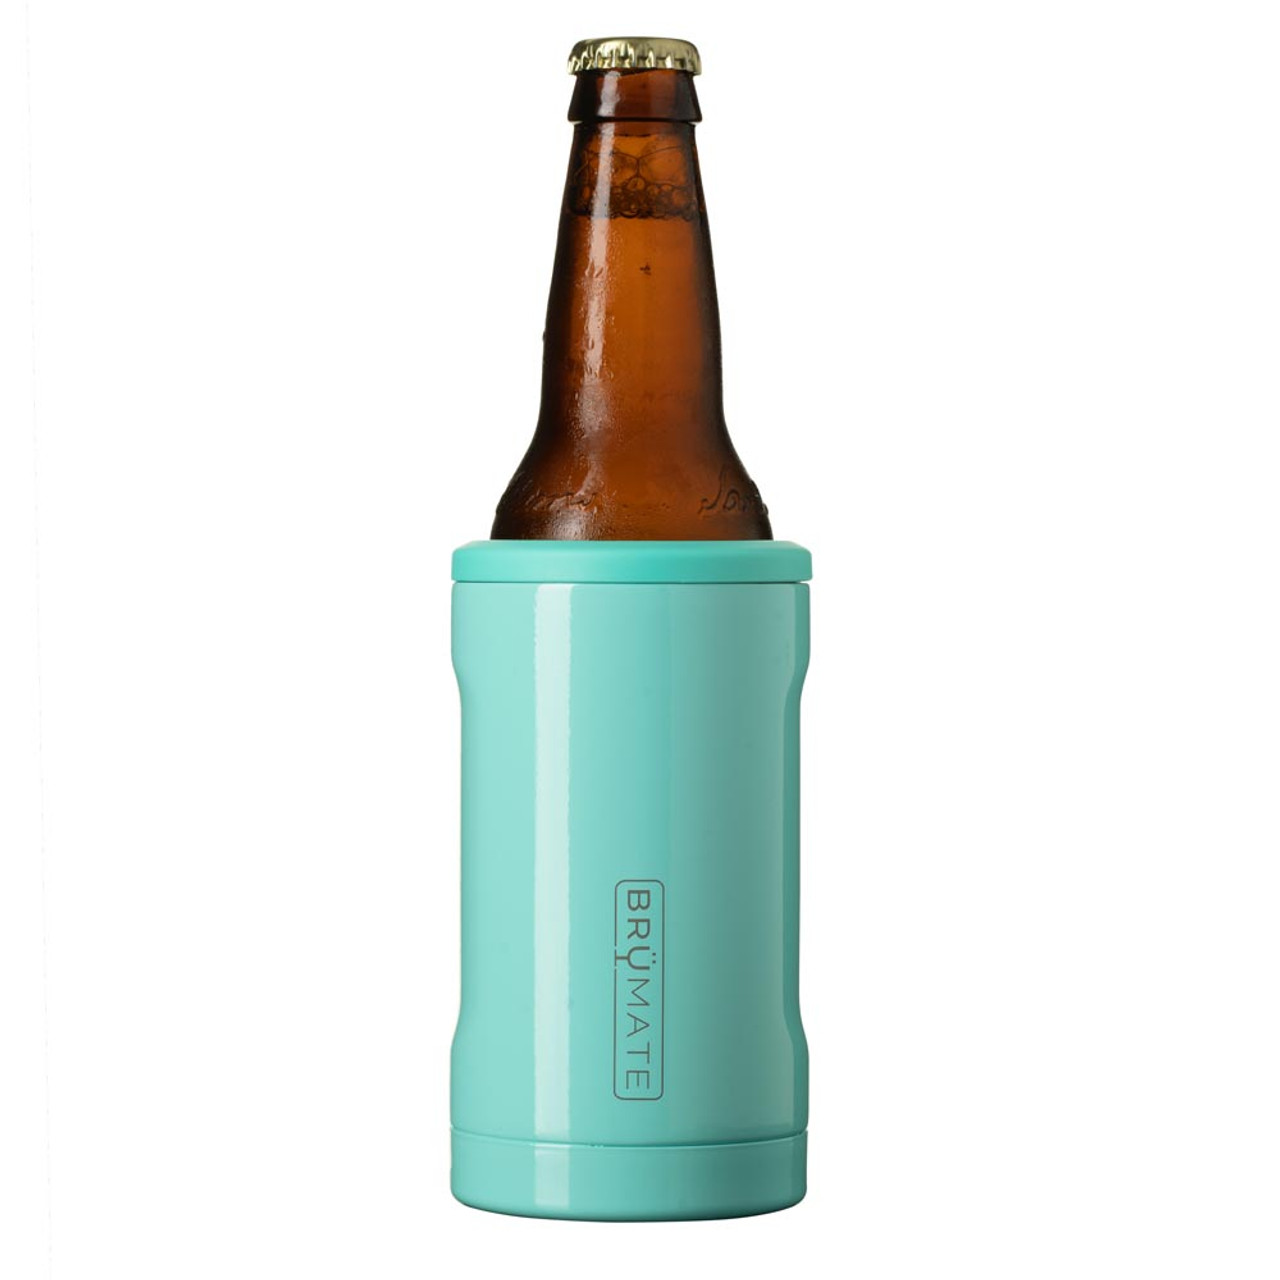 BruMate Hopsulator Insulated Bottle Holder for Standard 12oz Glass Bottles,  OD Green